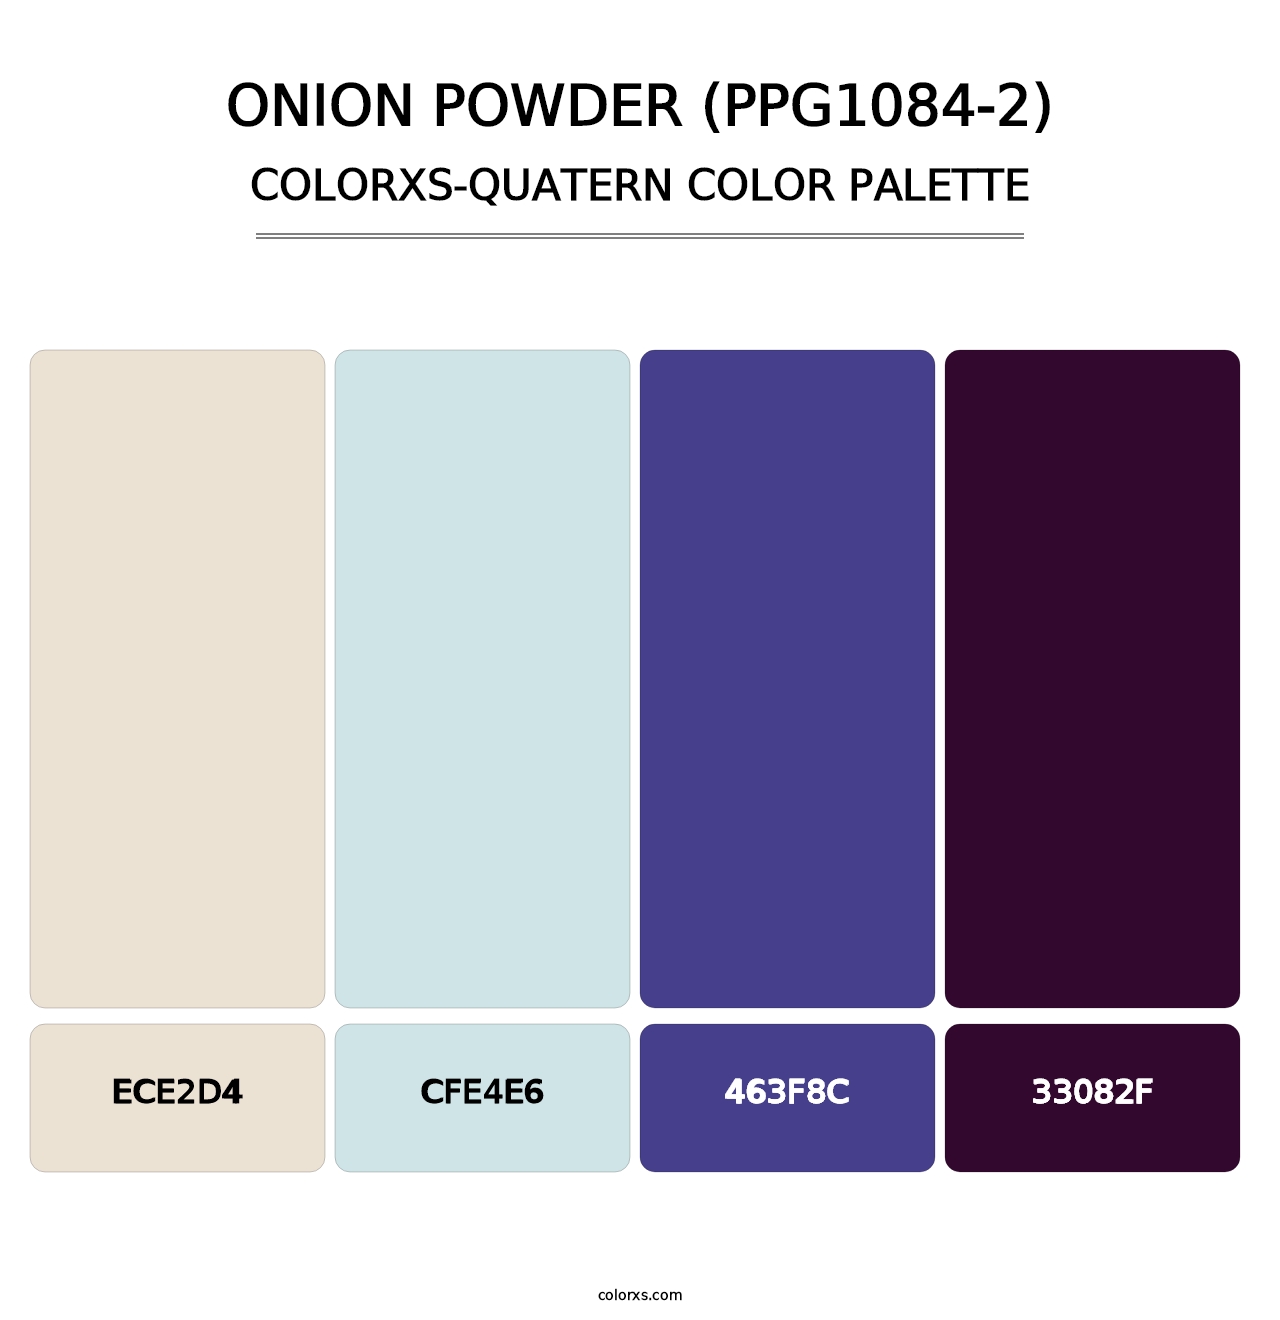 Onion Powder (PPG1084-2) - Colorxs Quatern Palette